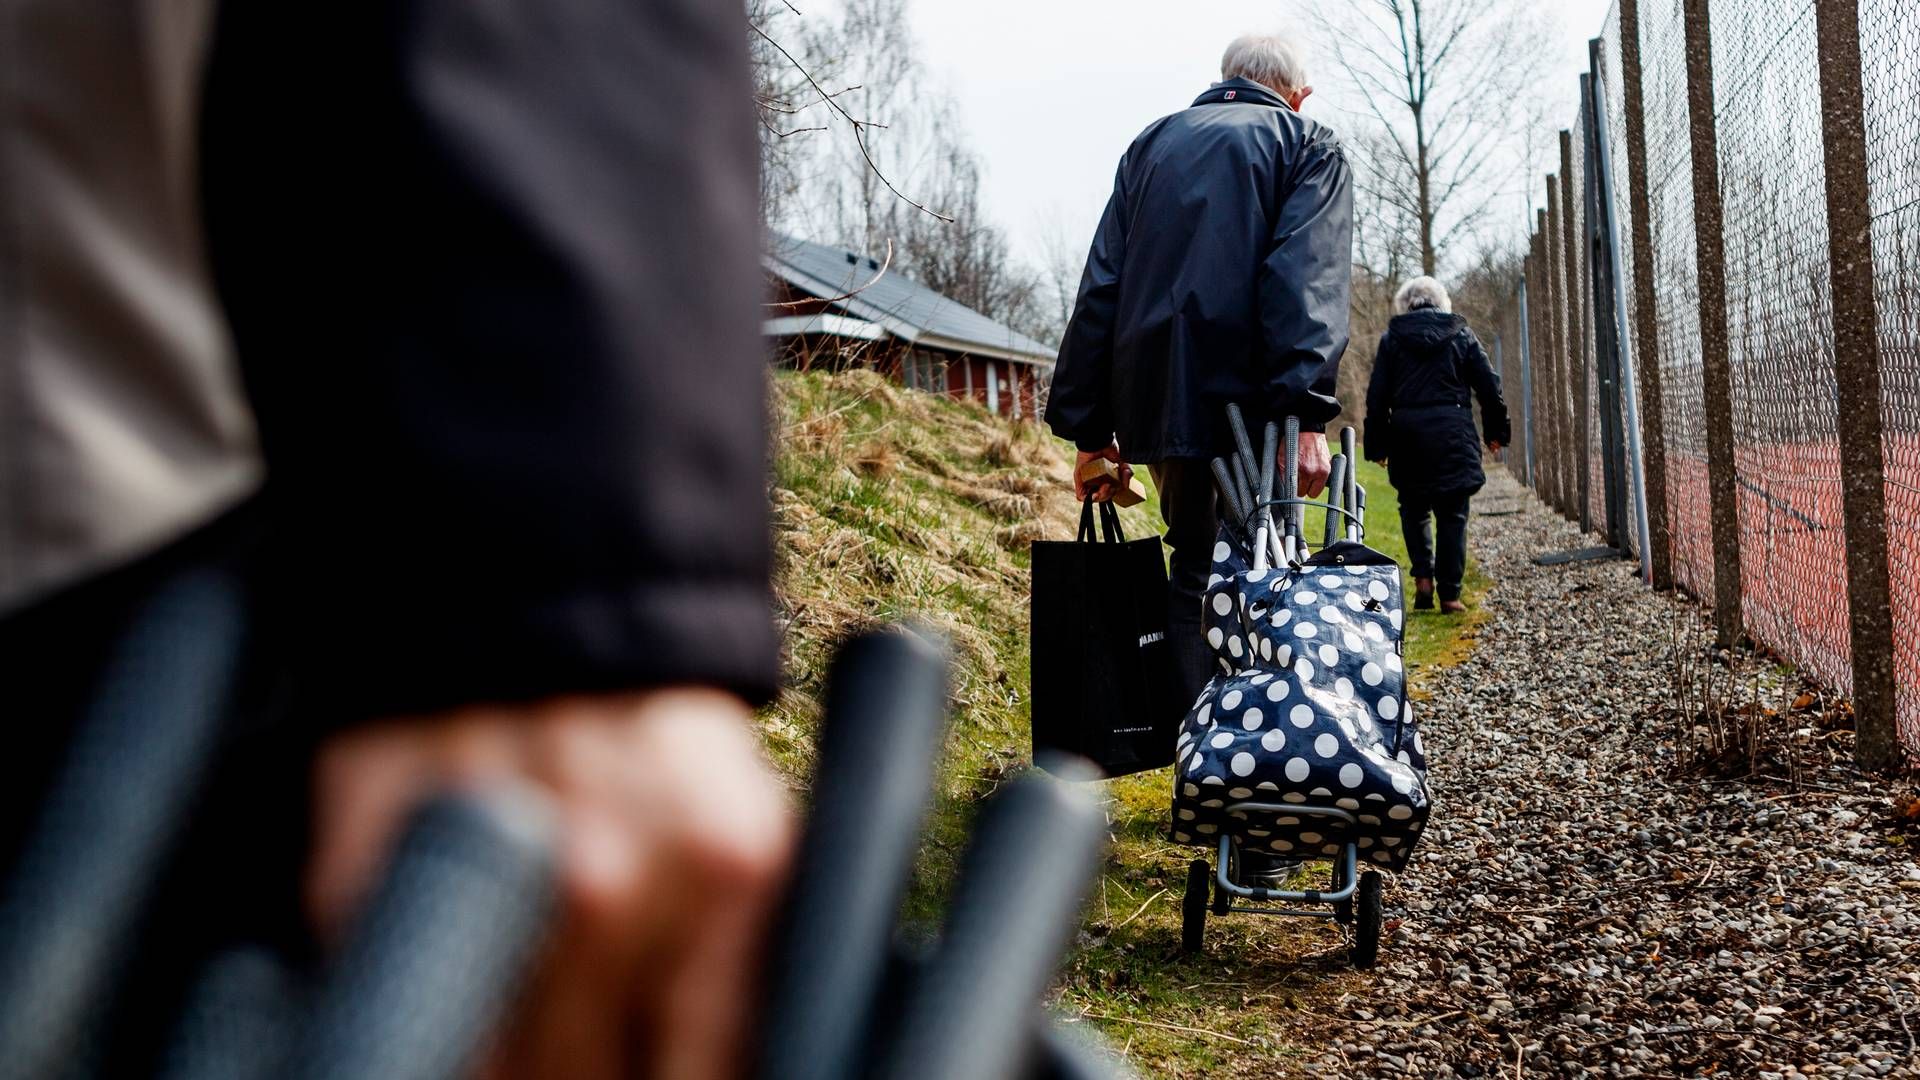 Landets penionsopsparere og pensionister vil i fremtiden ikke nødvendigvis have syge- og ulykkesforsikringer og forvaltning af pensionsformuen i samme selskab. | Foto: Mikkel Berg Pedersen /Jyllands-Posten/Ritzau Scanpix